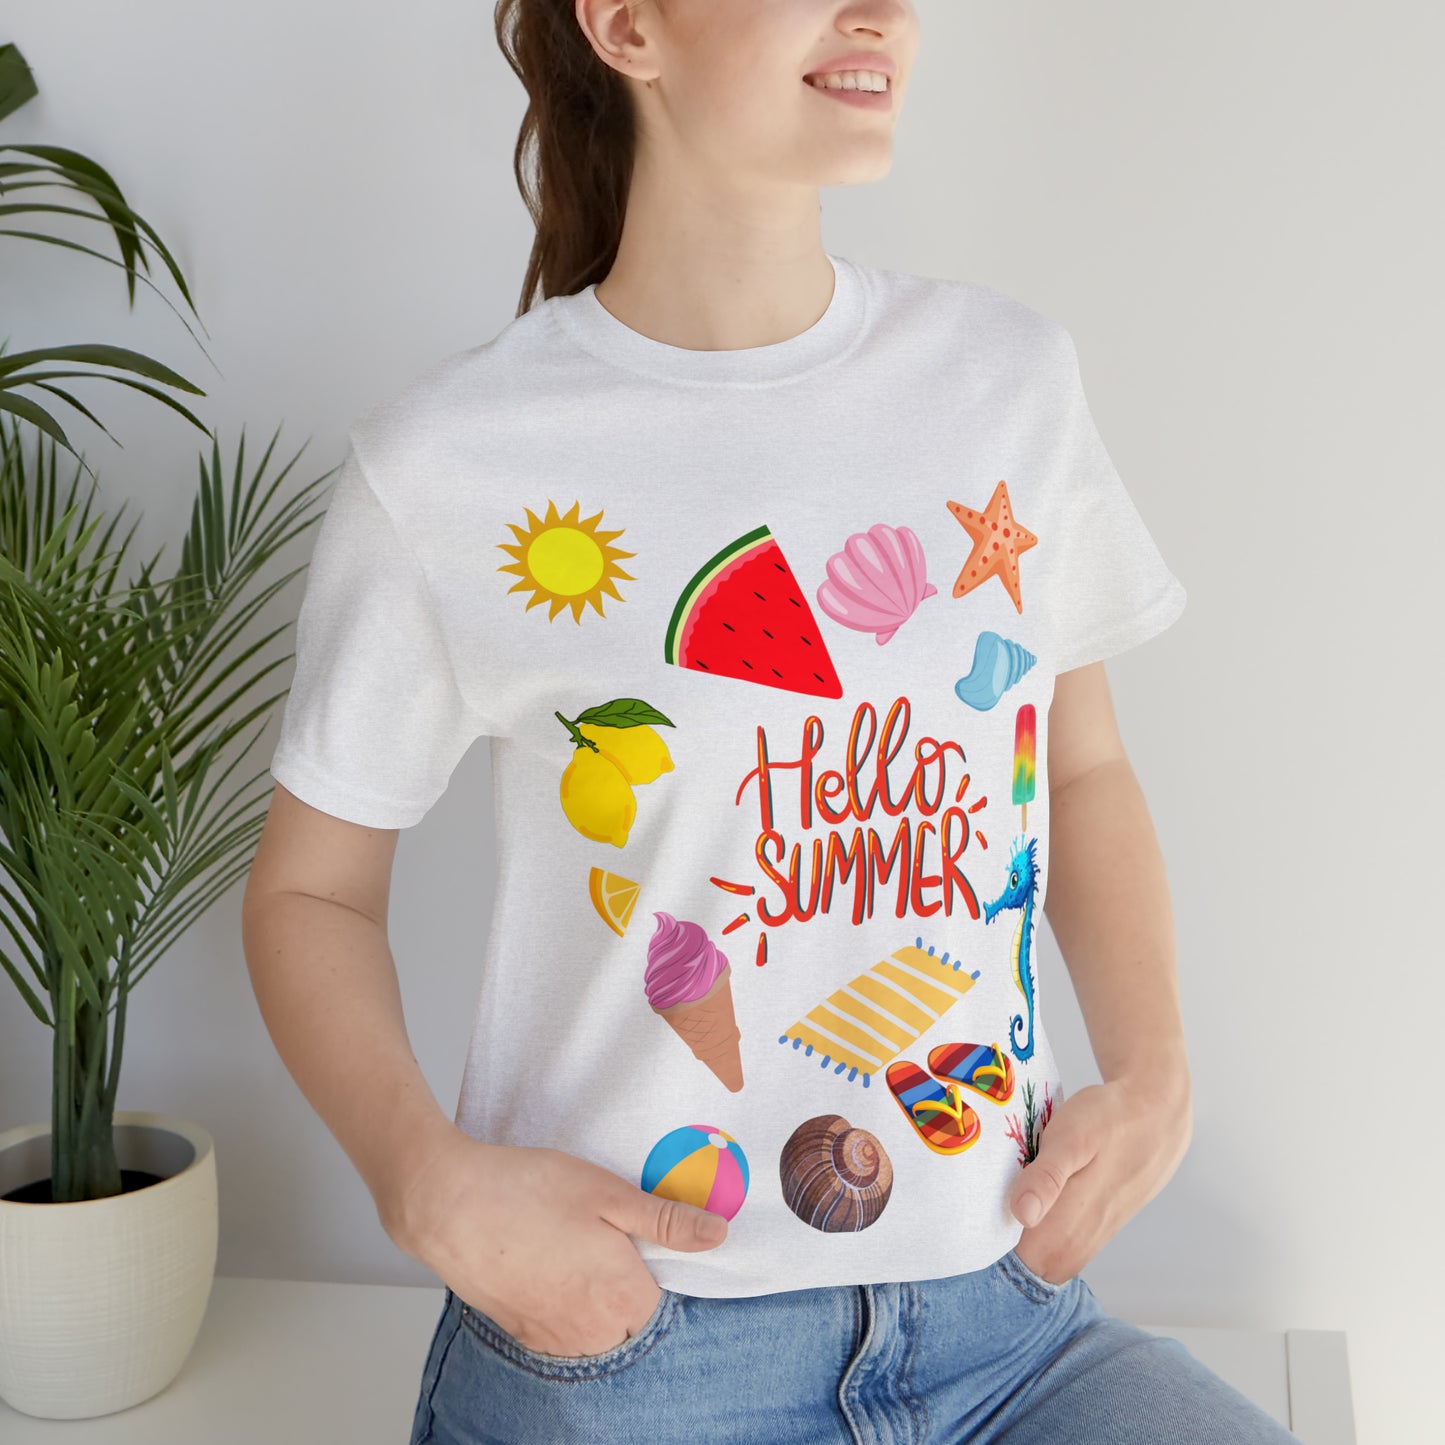 Hello Summer shirt, Summer shirts for women and men, Summer Casual Top Tee